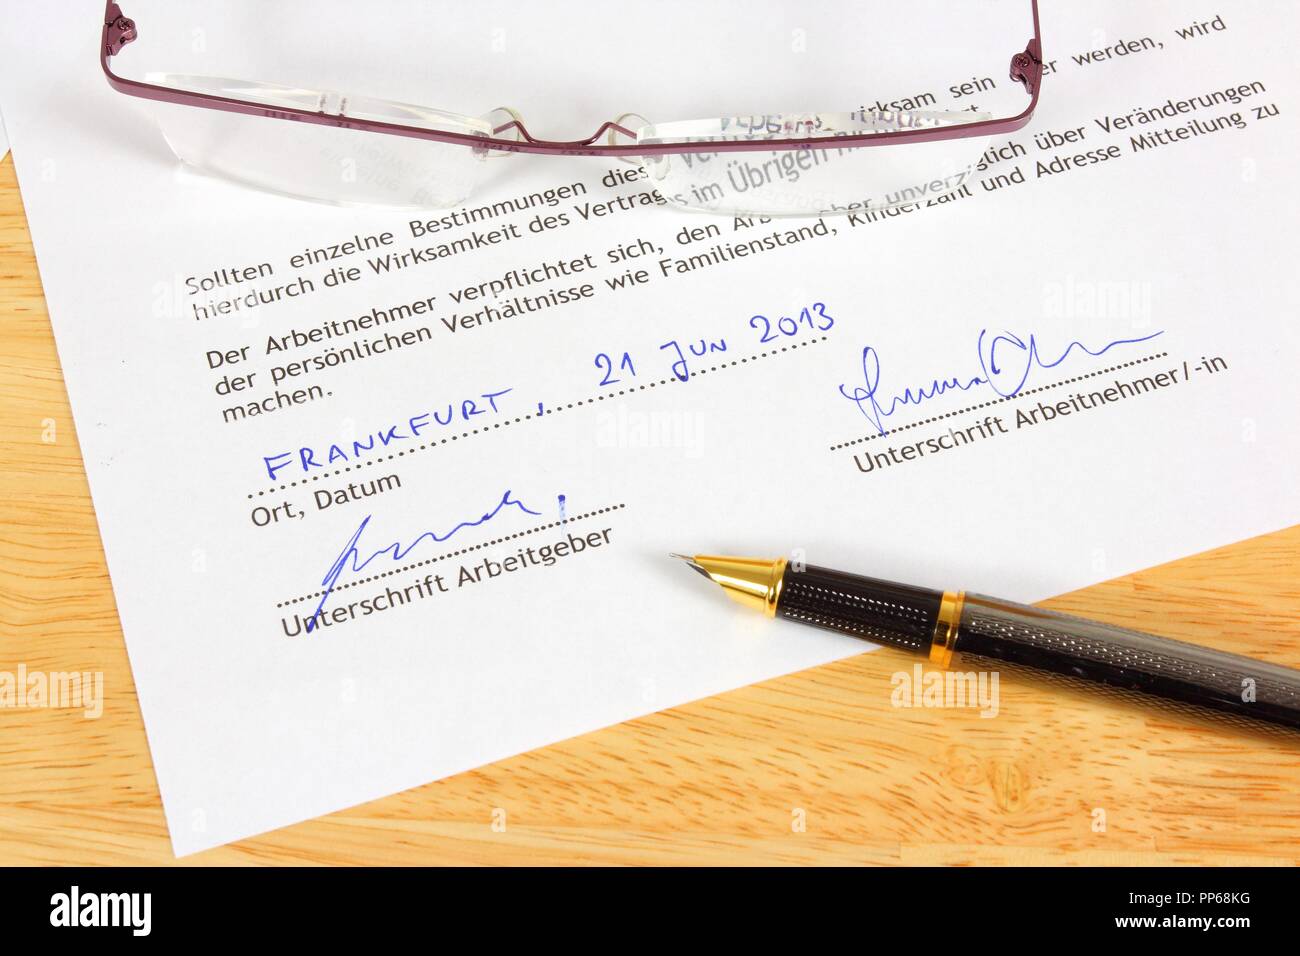 Business Objects - Vollzeit fiktive Arbeitsvertrag in deutscher Sprache bereit, mit Kugelschreiber zu unterzeichnen. Deutschland Karriere. Stockfoto